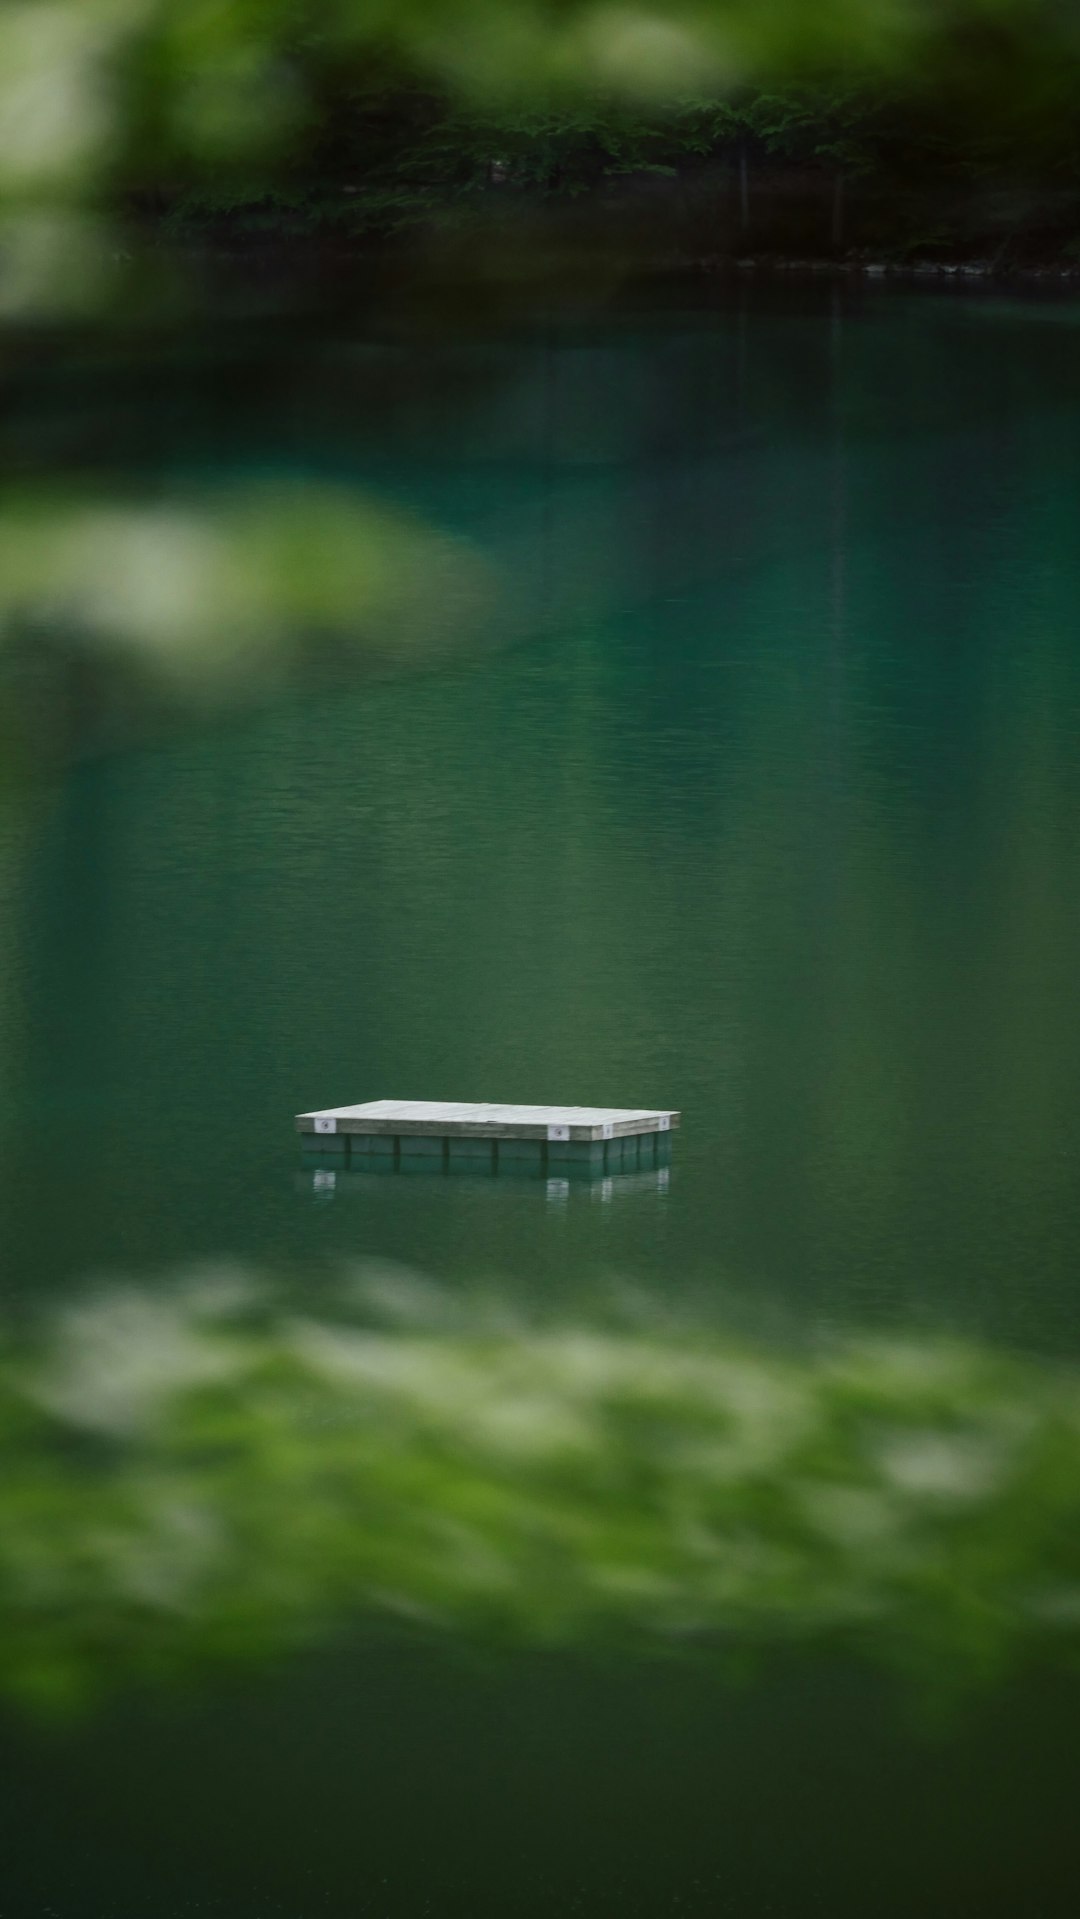 white wooden dock on lake during daytime